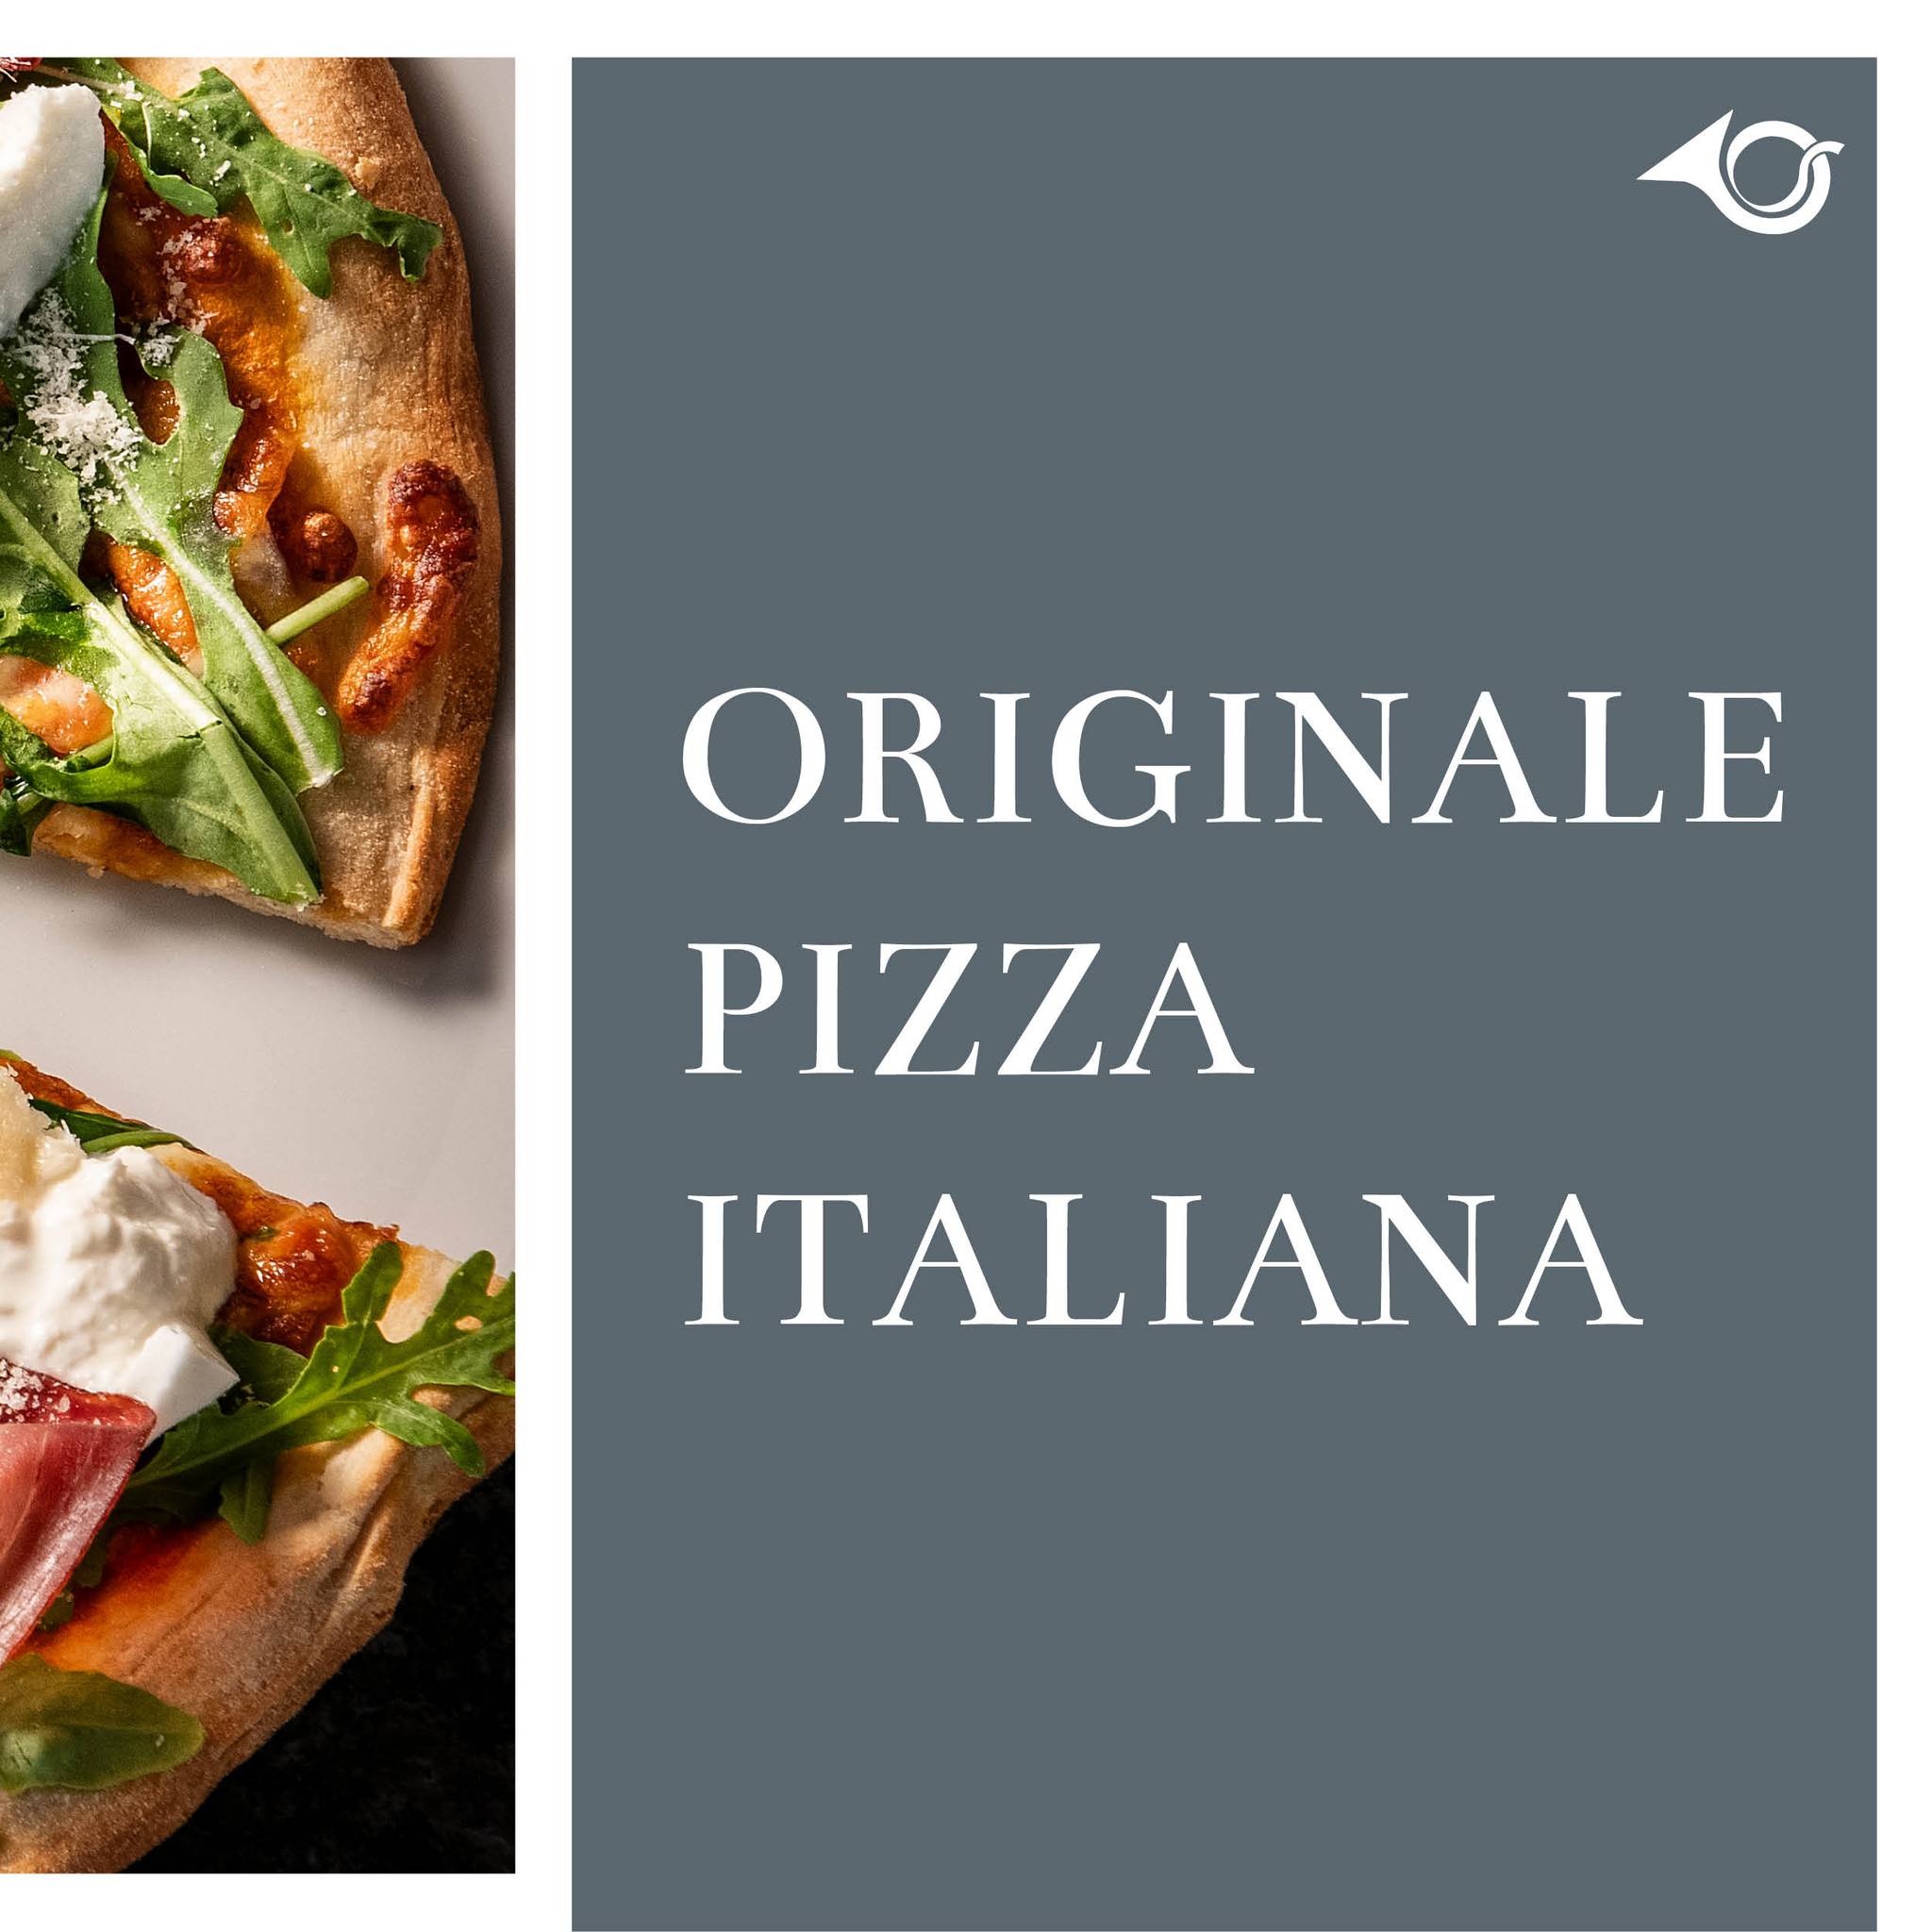 Pizza & Vino 🍕🍷
Was für eine fantastische Kombi. Beides servieren wir euch gerne täglich von 12 bis 18 Uhr. Die Pizza stammt von unserem grandiosen Pizzaiolo Adriano, der Wein aus unserem Keller.

#postbar #postbarbistro #postamsee #postamseeachensee #seeyouthere #bergundsee #tirol #austria #achensee #bestoftirol #ilovetirol #visitaustria #visittyrol #auszeit #winelovers #gourmetmenü …